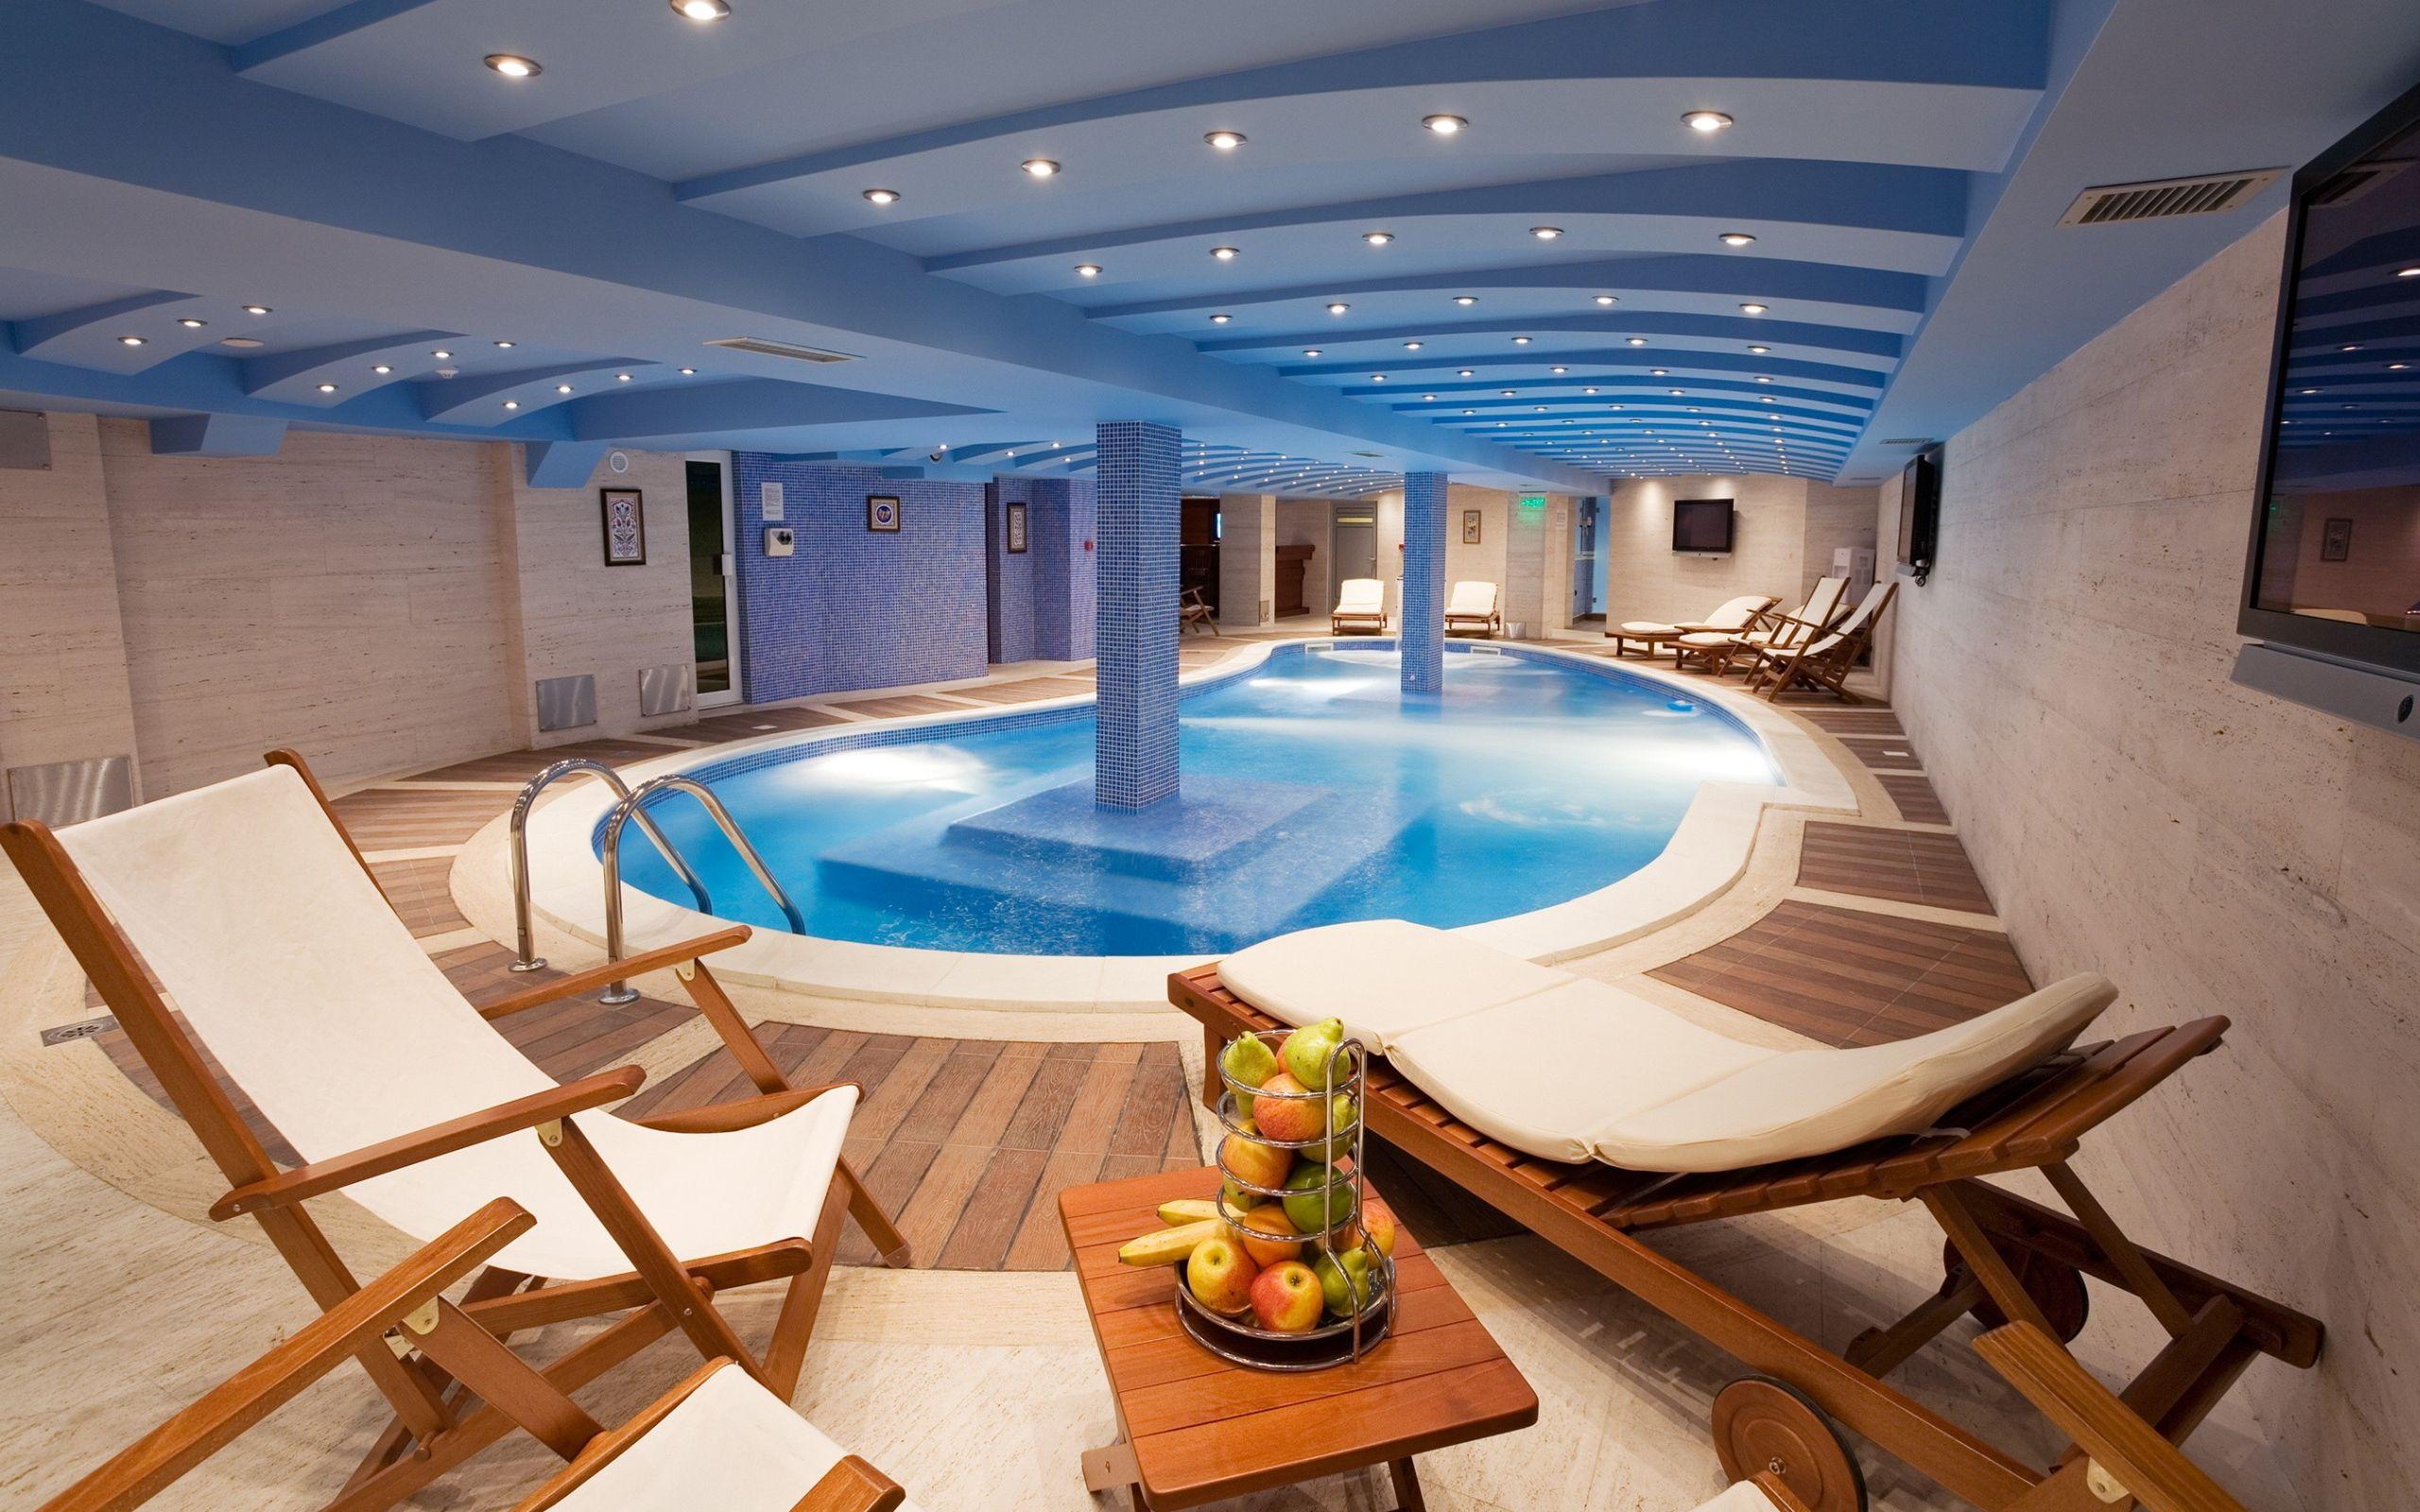 Luxury indoor swimming pool Wallpaper